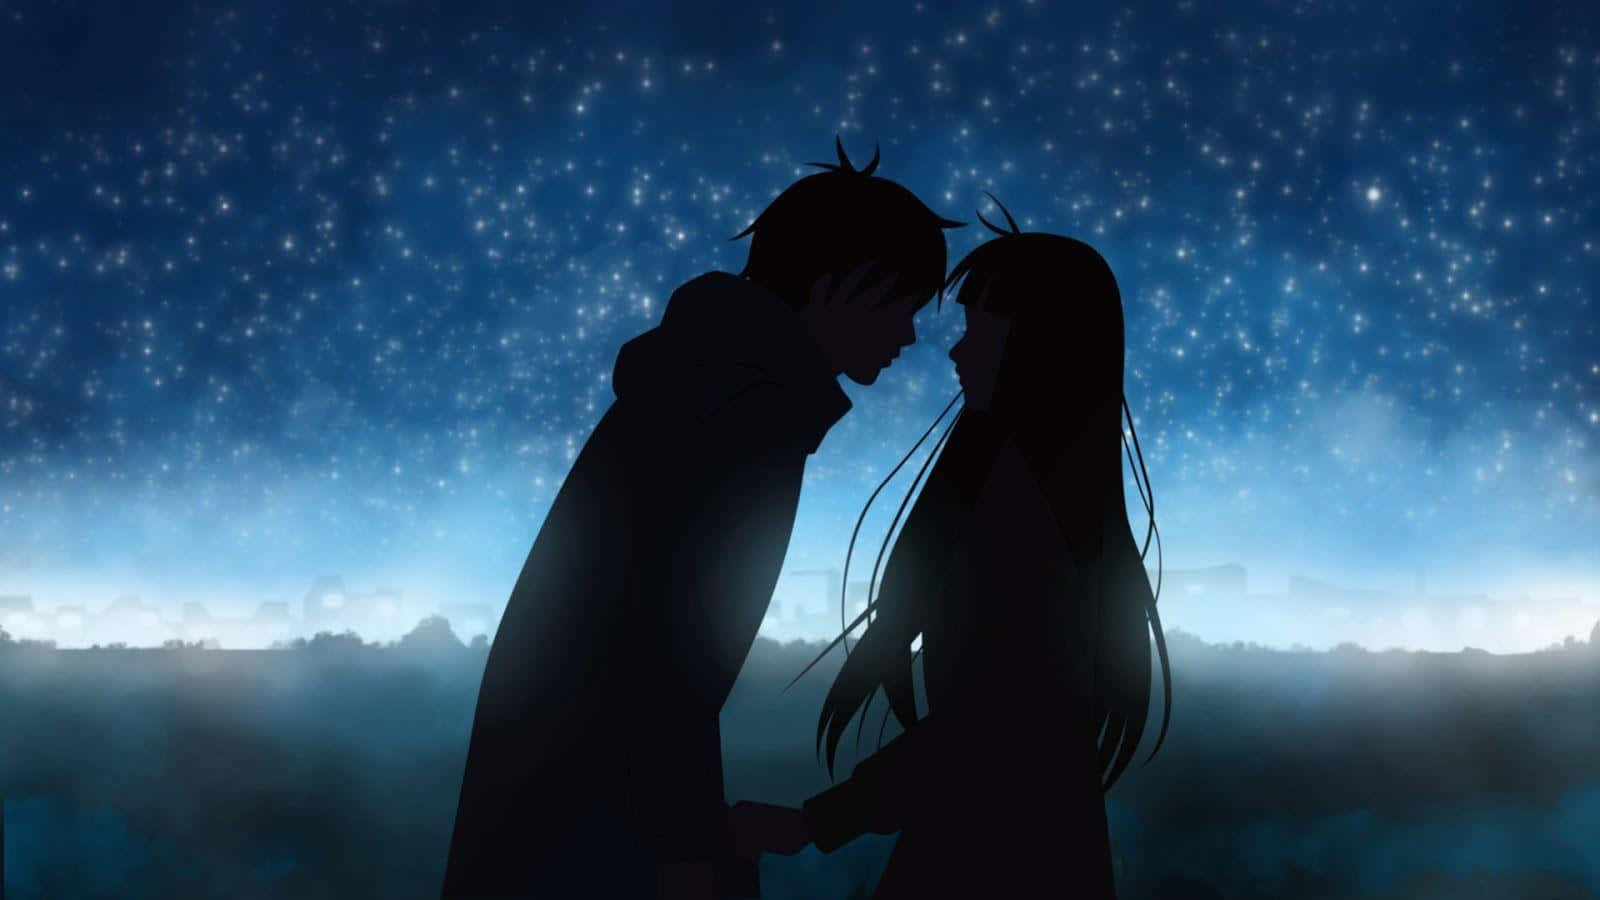 Parejade Anime Romántica En Silueta Sobre Un Cielo Nocturno Azul. Fondo de pantalla